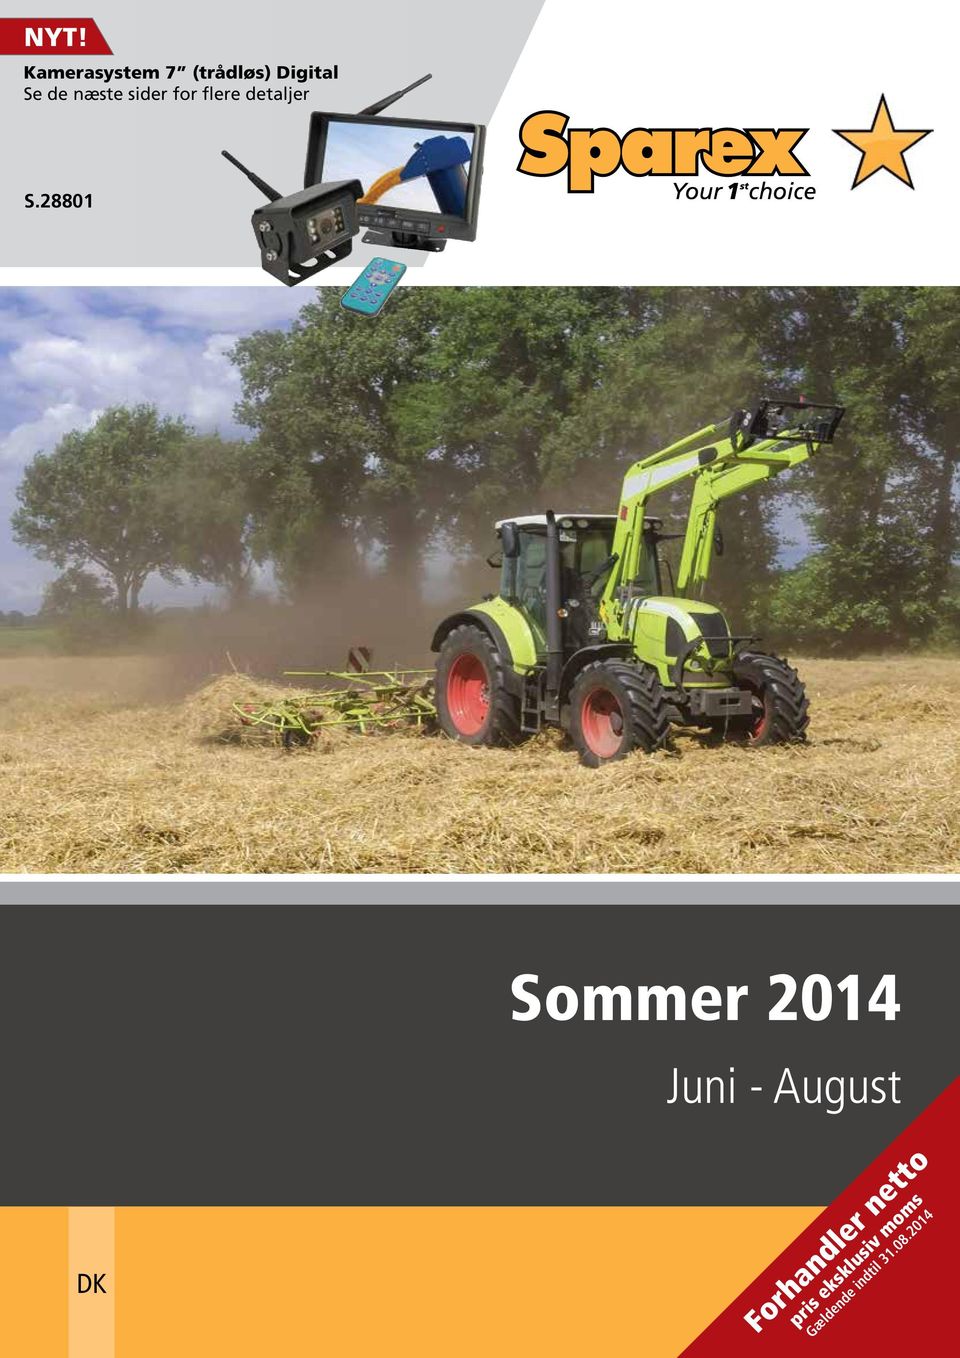 28801 Sommer 2014 Juni - August DK